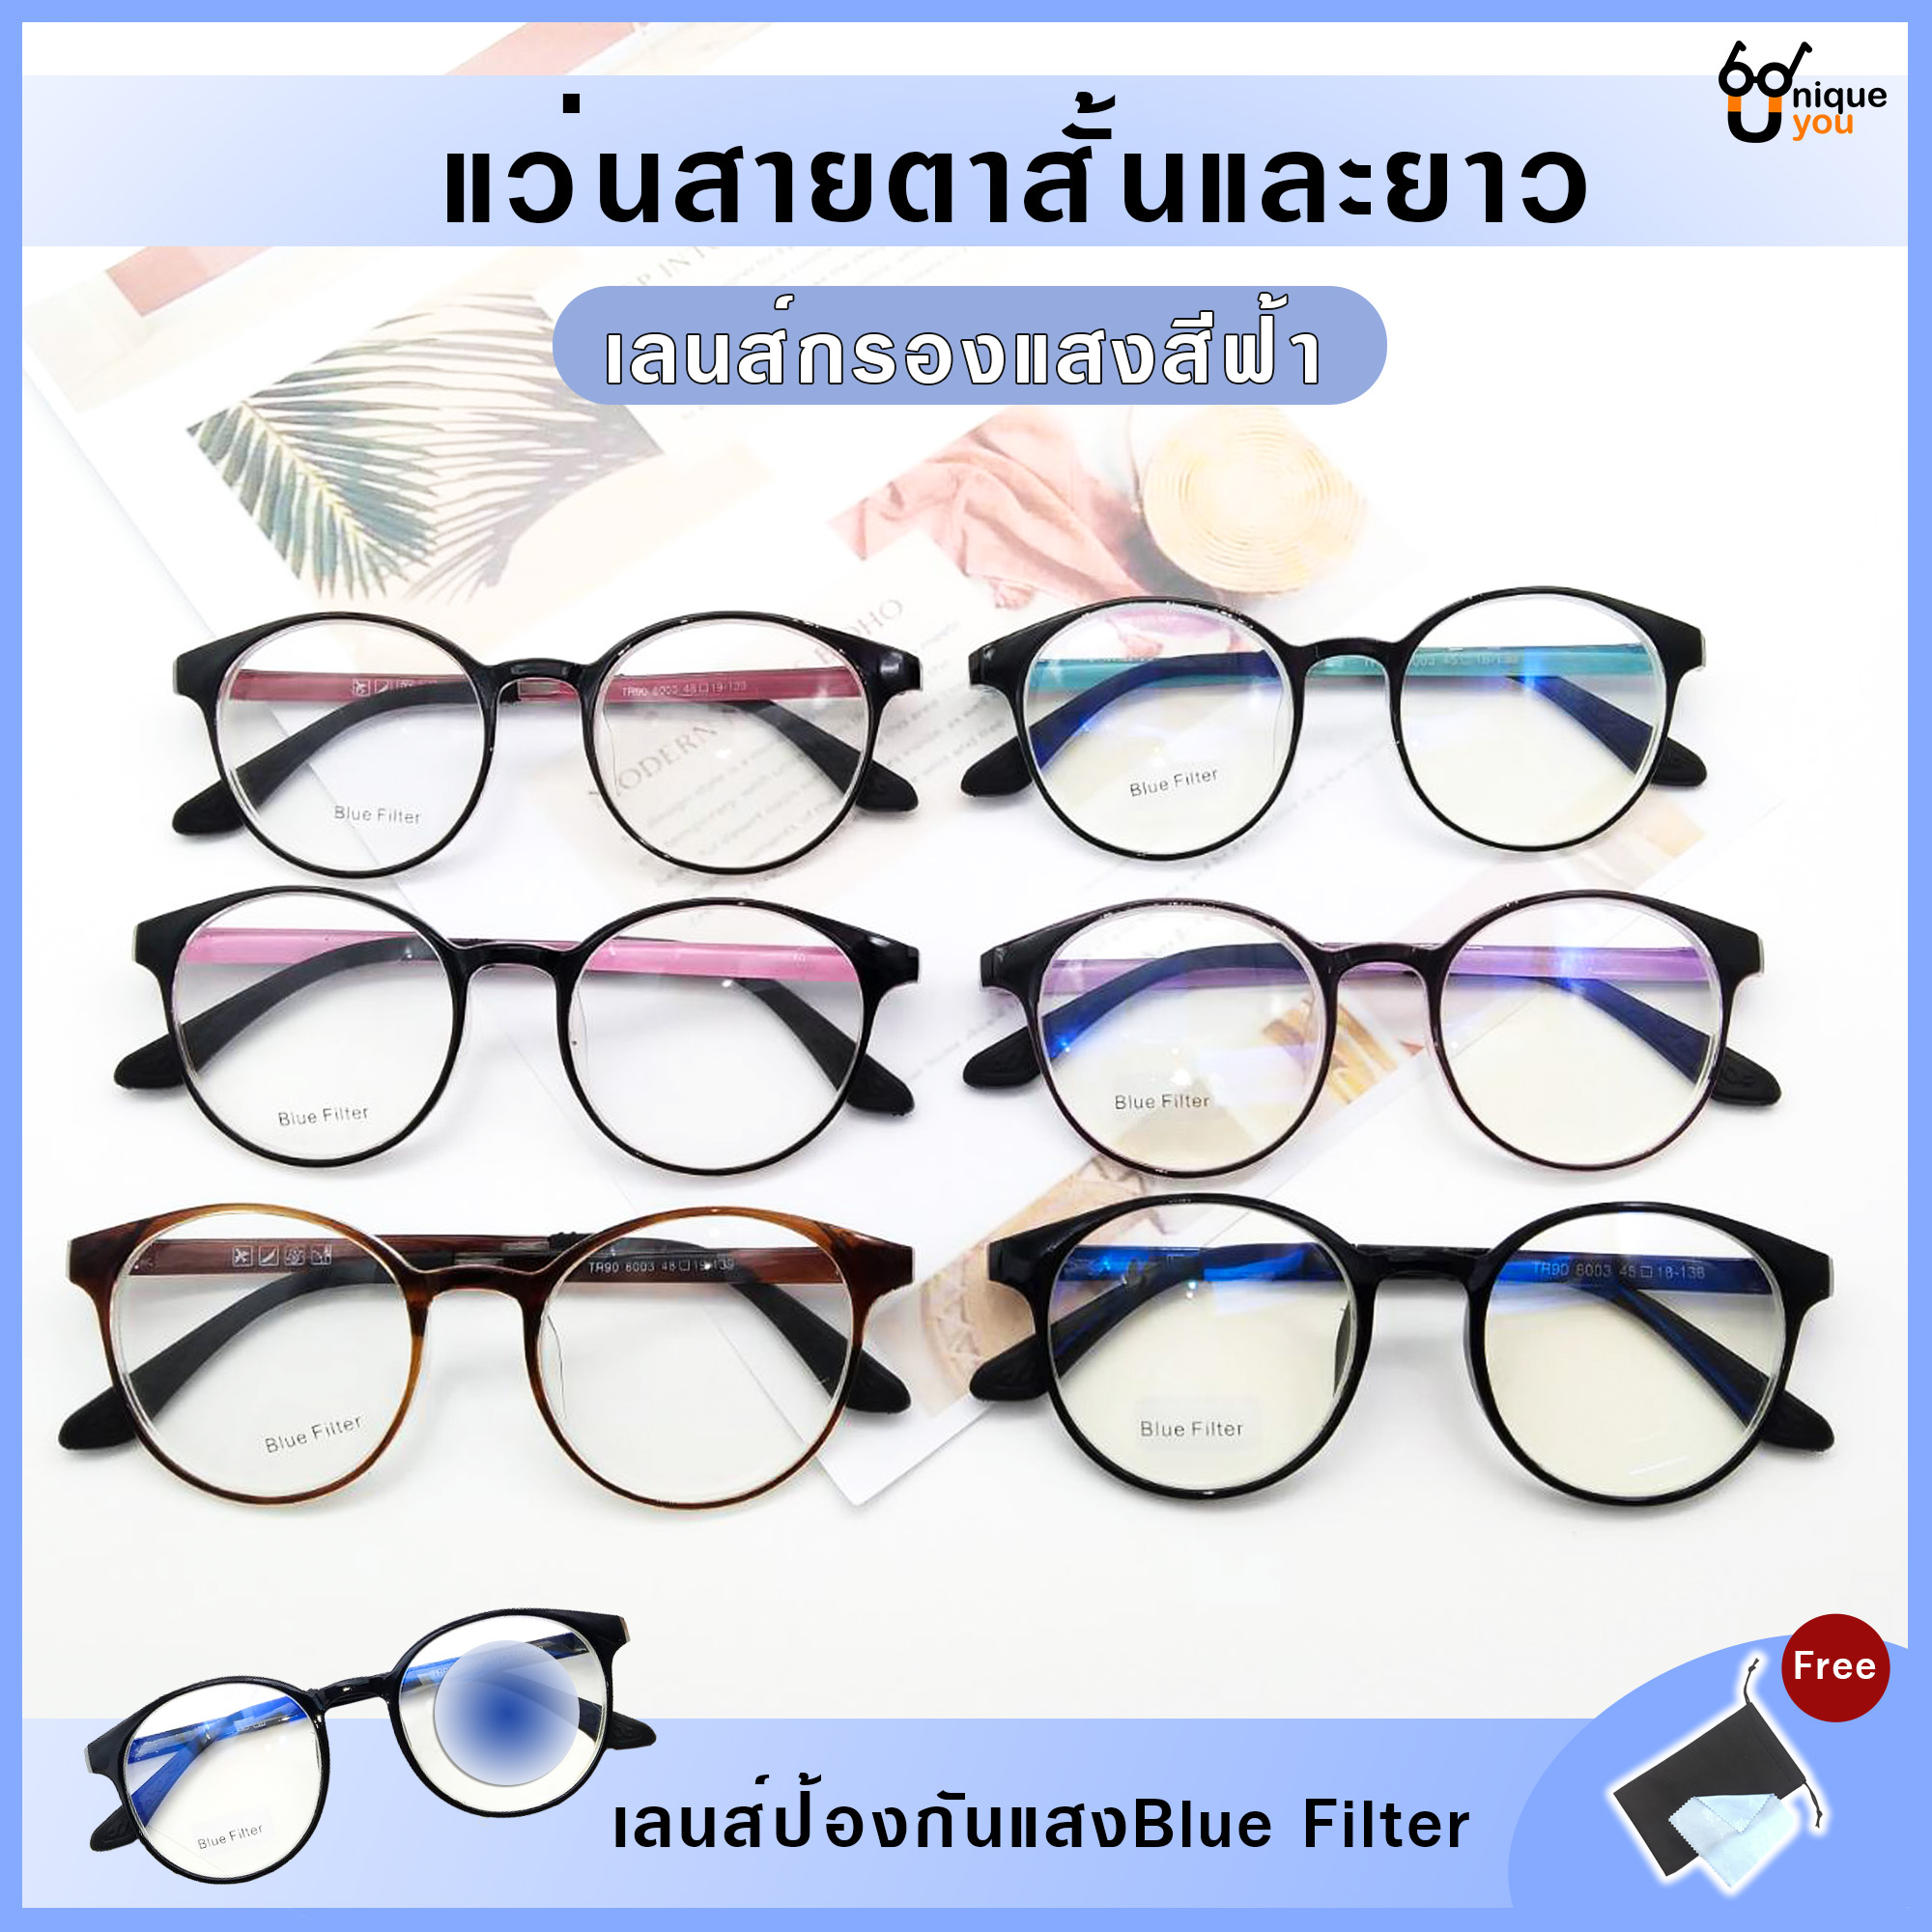 รูปภาพเพิ่มเติมของ Uniq แว่นสายตาสั้นและสายตายาว  เลนส์กรองแสงสีฟ้า Blue Filter เลนส์ชัดน้ำหนักเบา คุณภาพอย่างดี พร้อมผ้าเช็ดแว่นและถุงผ้าใส่แว่น